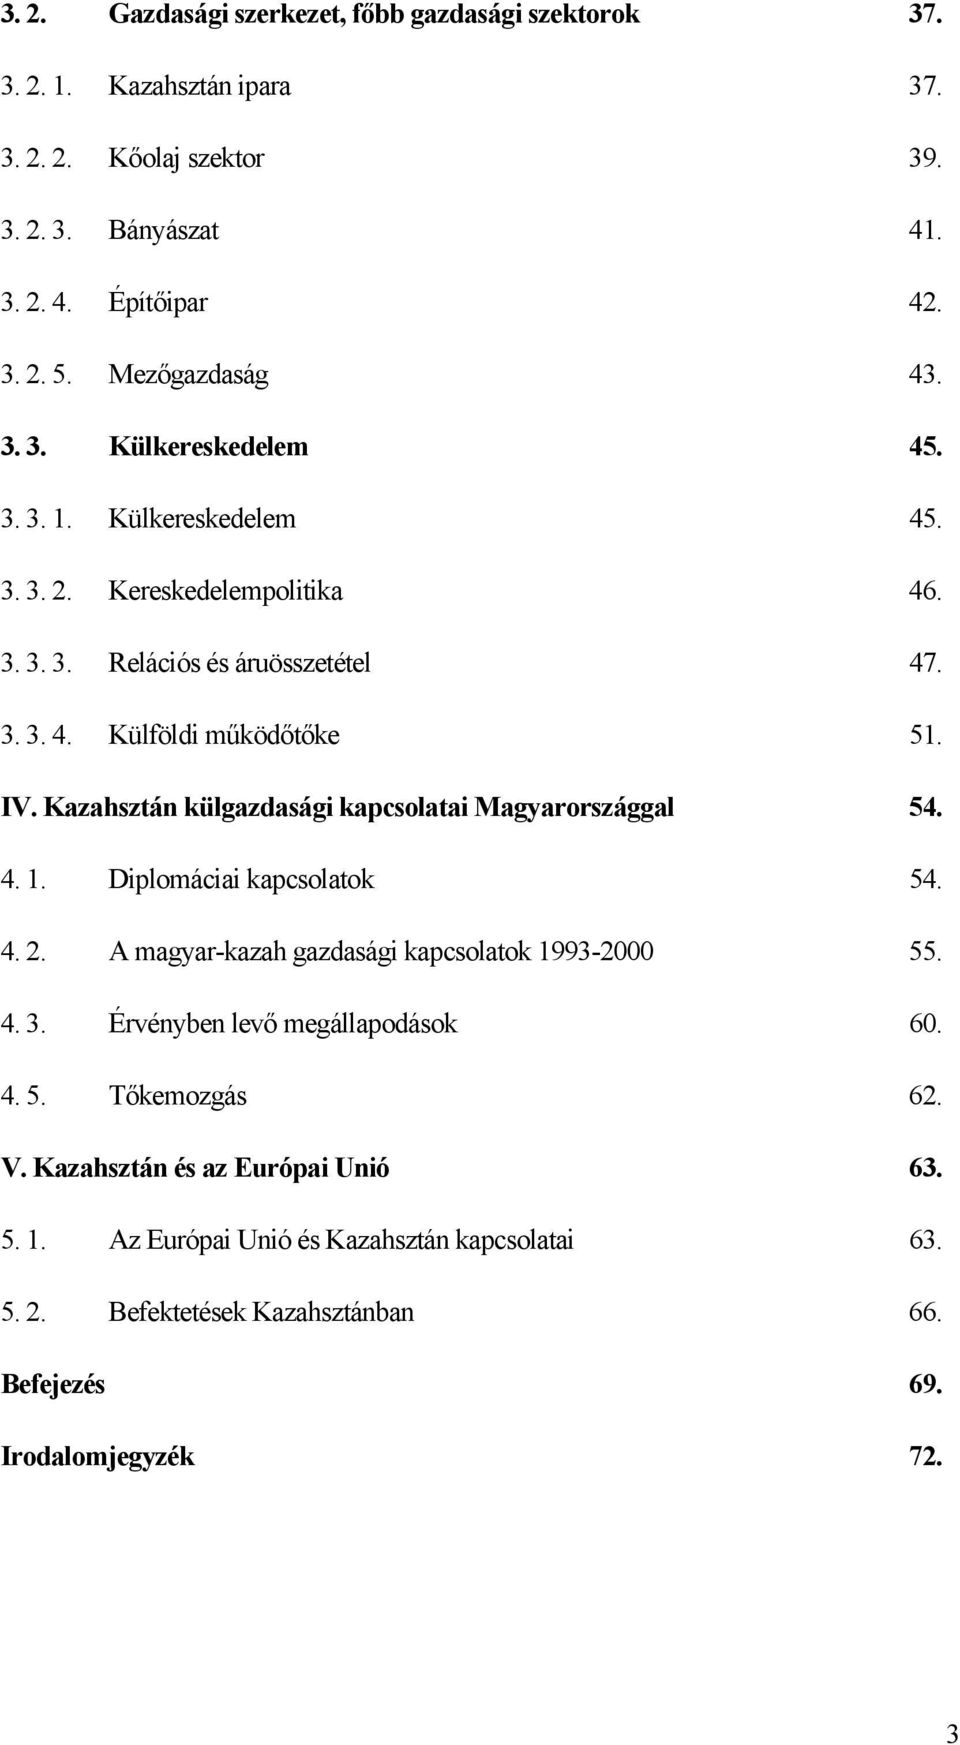 IV. Kazahsztán külgazdasági kapcsolatai Magyarországgal 54. 4. 1. Diplomáciai kapcsolatok 54. 4. 2. A magyar-kazah gazdasági kapcsolatok 1993-2000 55. 4. 3.